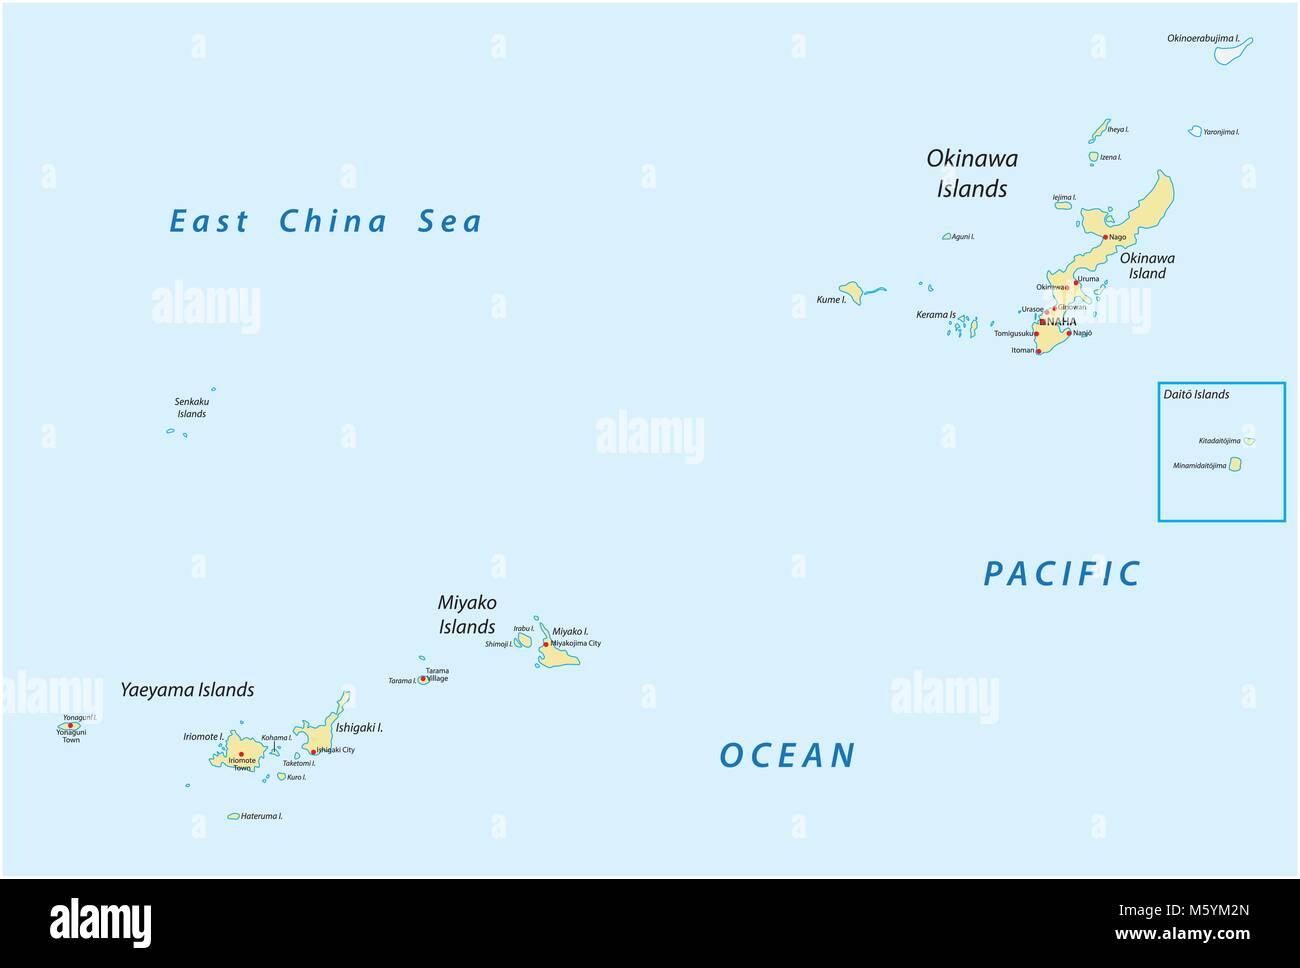 Carte vectorielle détaillée de l'île japonaise d'Okinawa Miyako et groupes, Îles Yaeyama, Japon Illustration de Vecteur